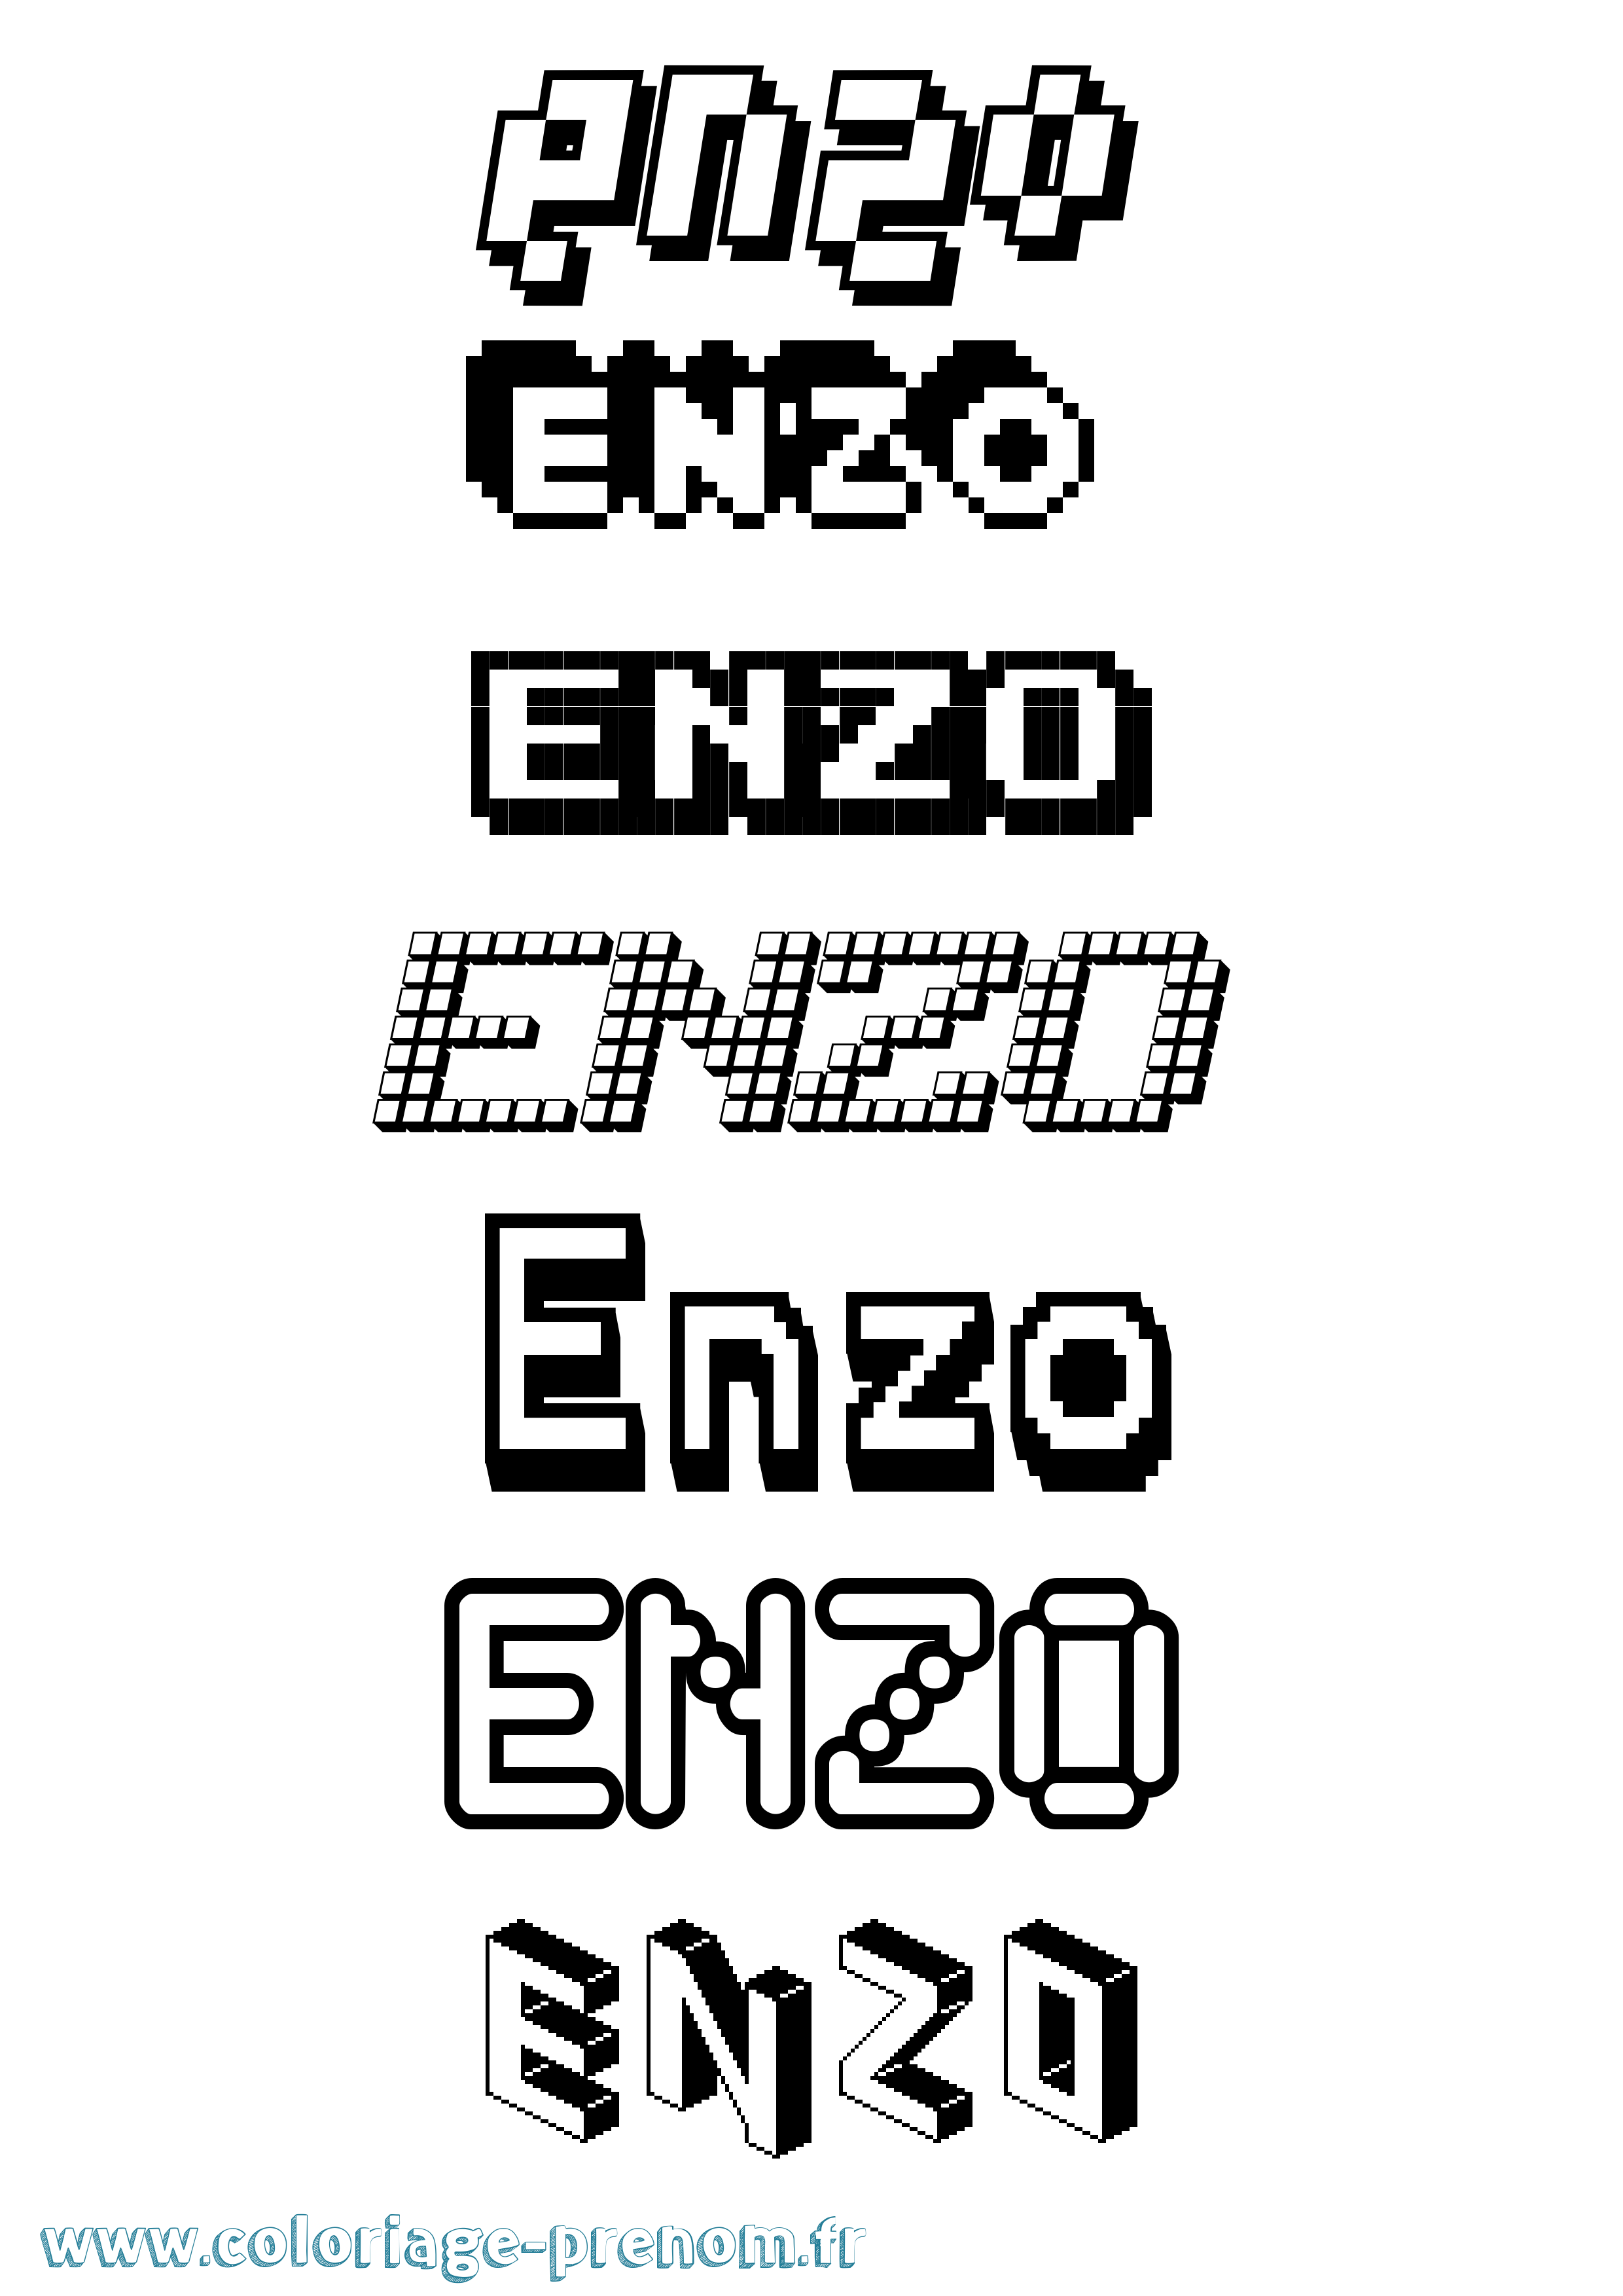 Coloriage prénom Enzo Pixel